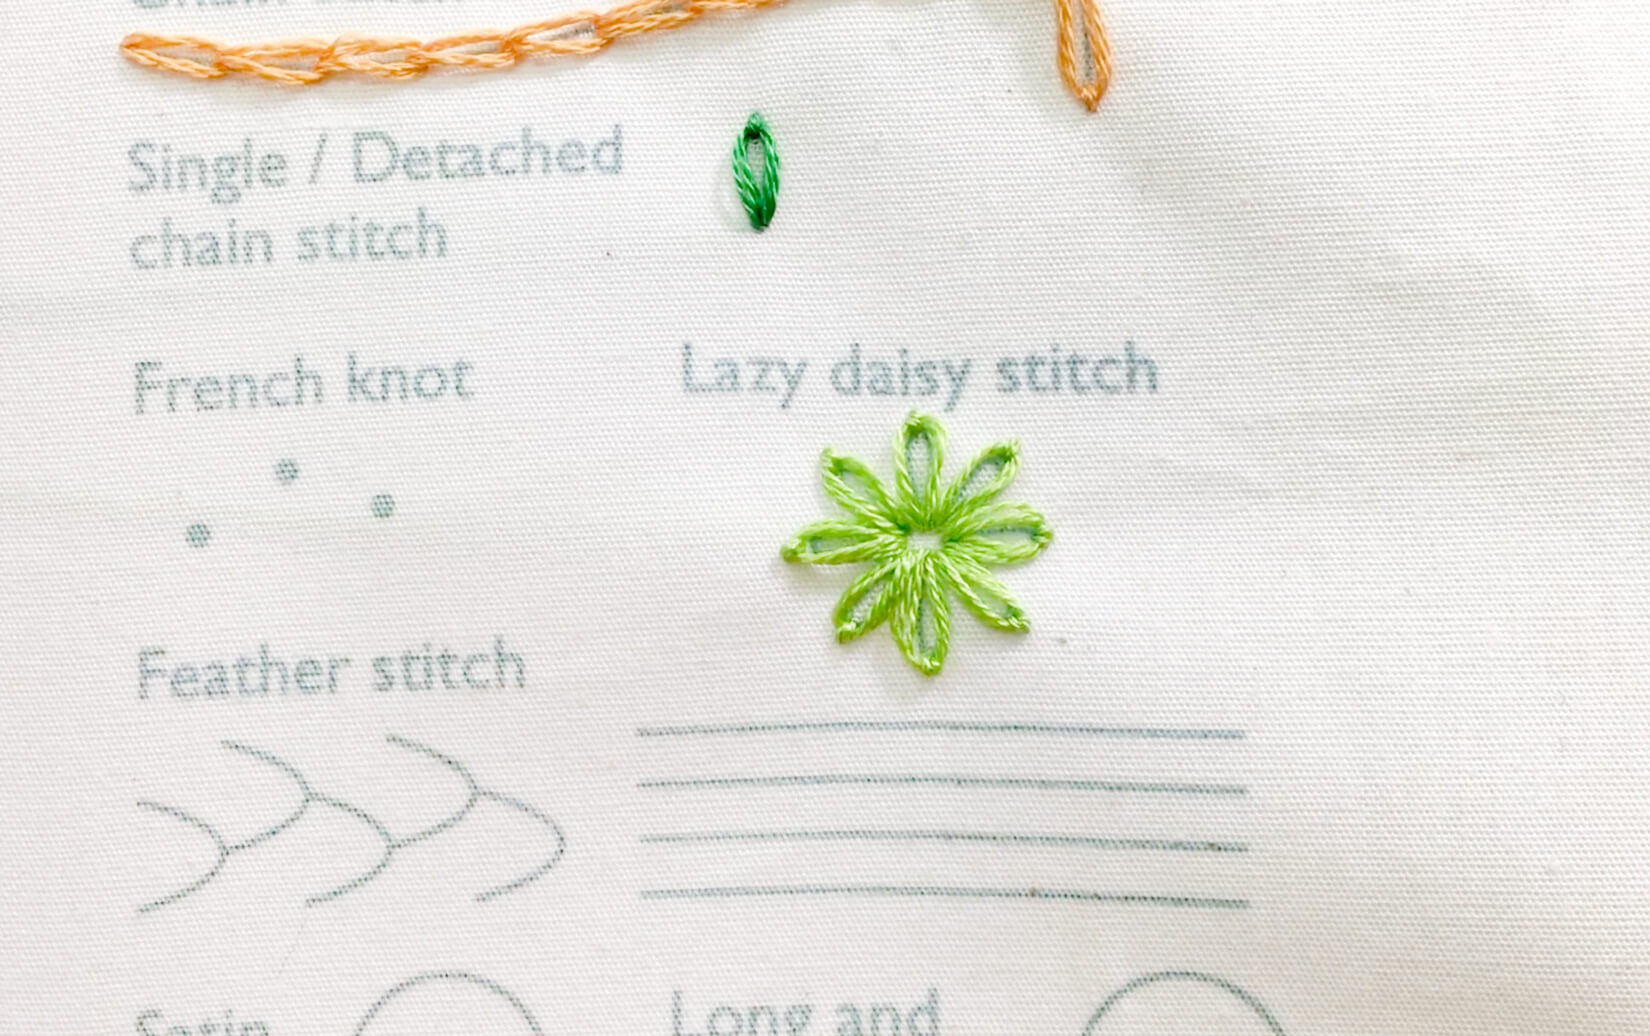 Image of stitching the lazy daisy stitch